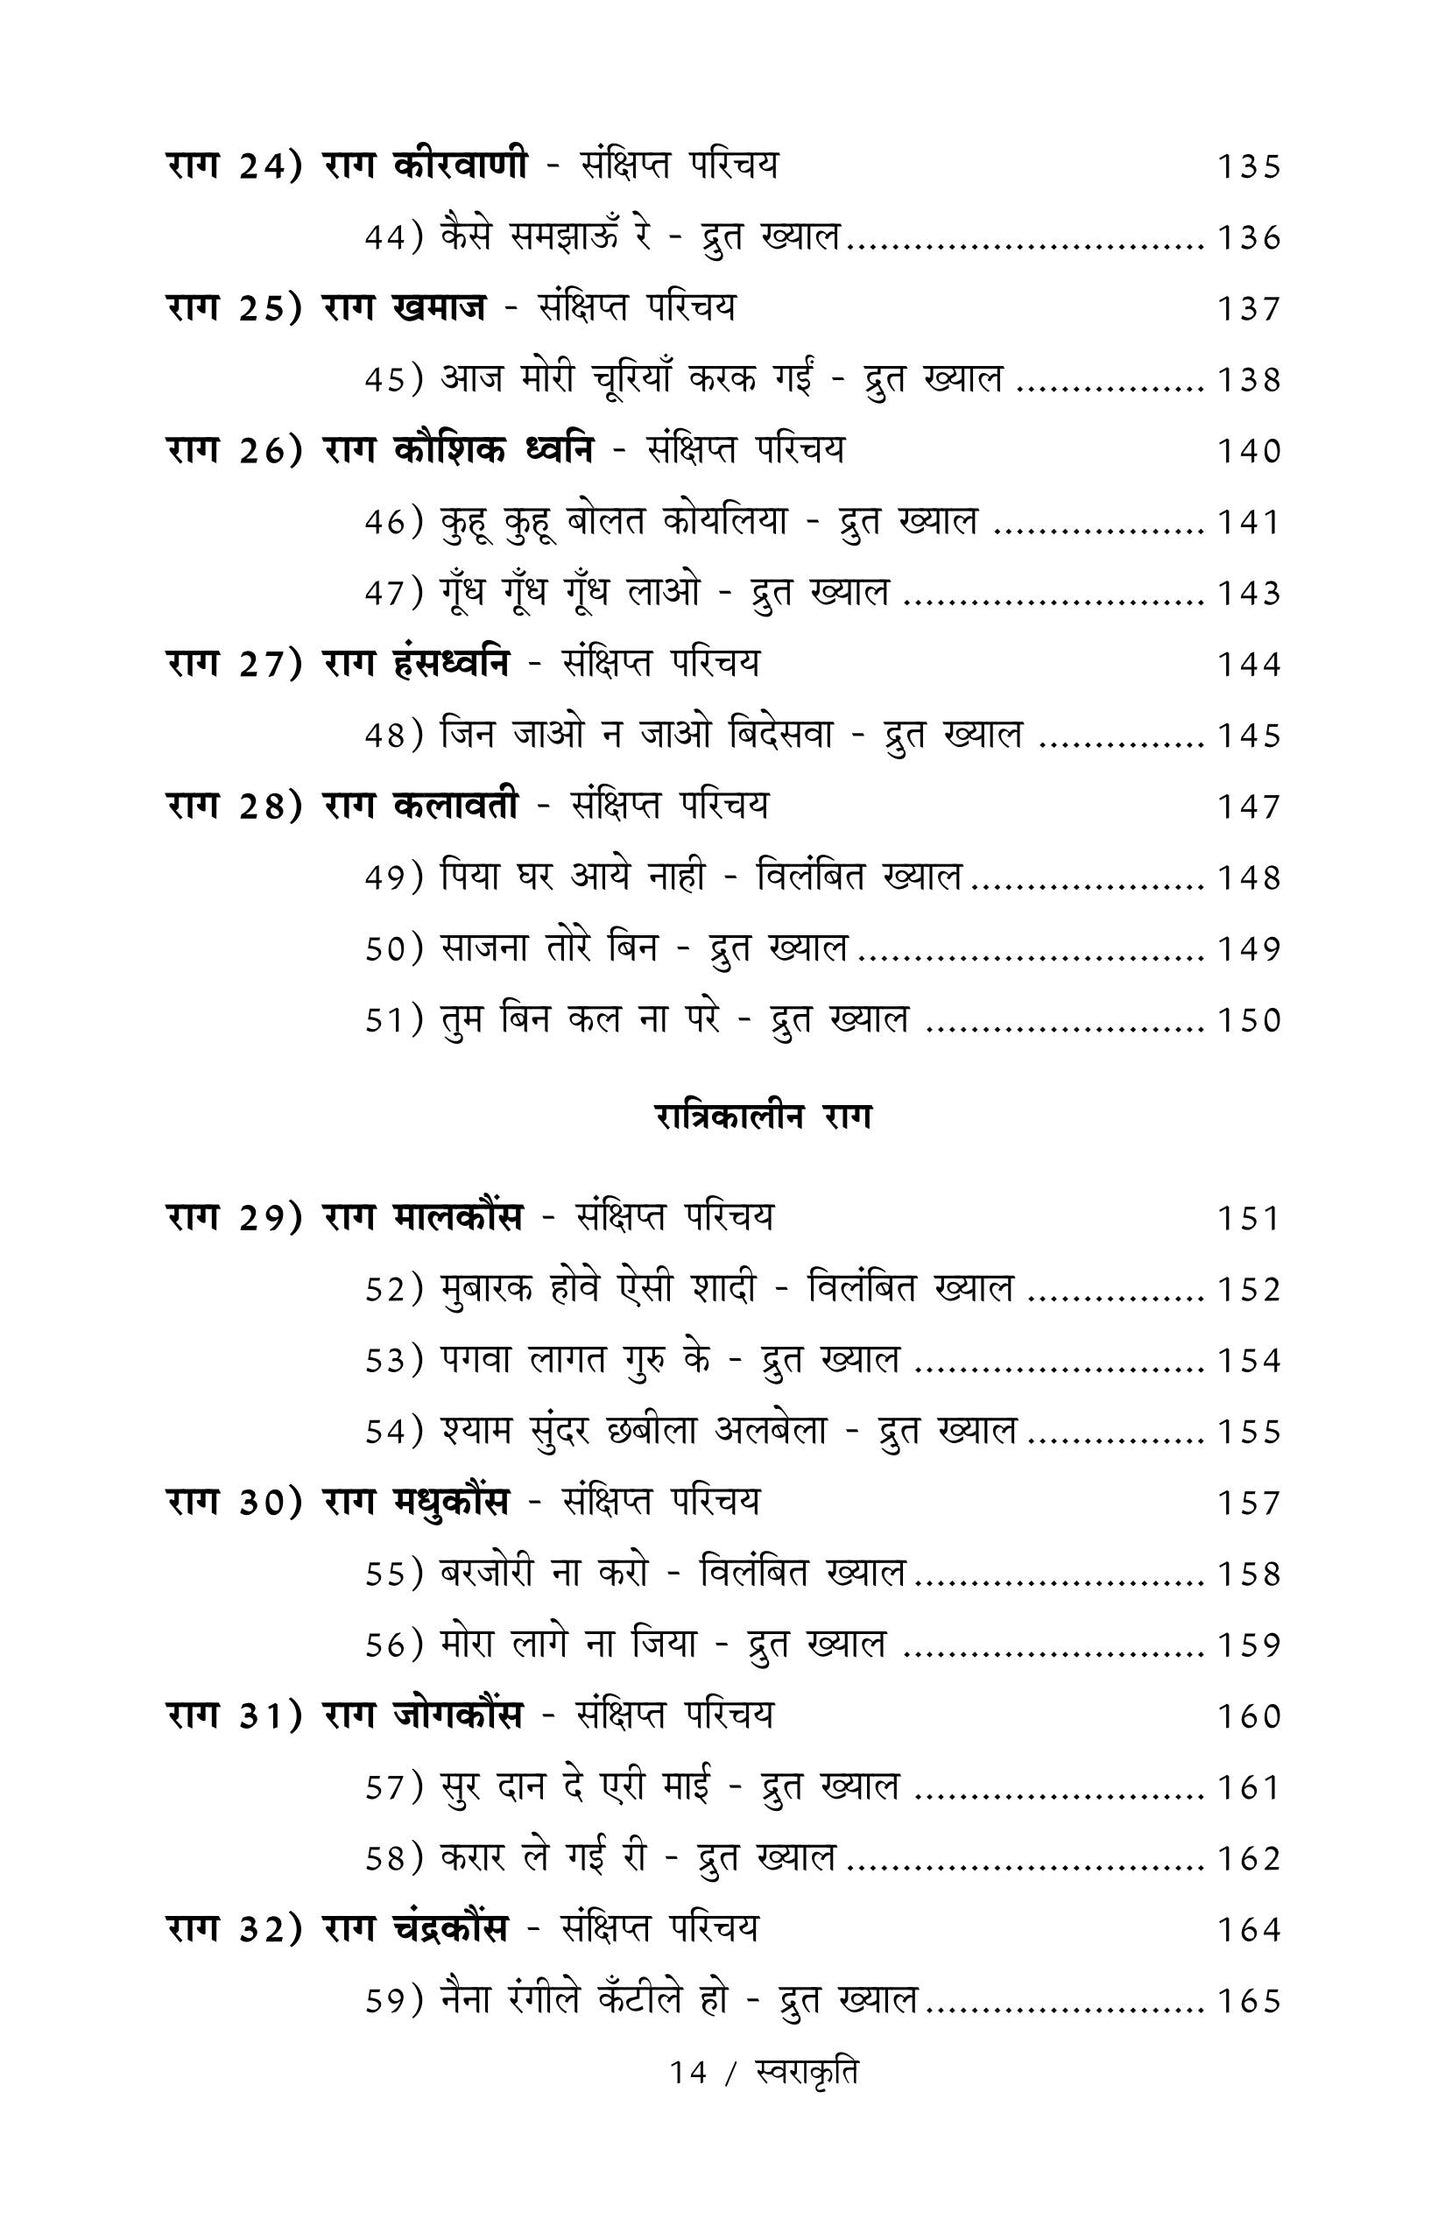 Swarakruti  ('Tanrang' - Bandish Notations)